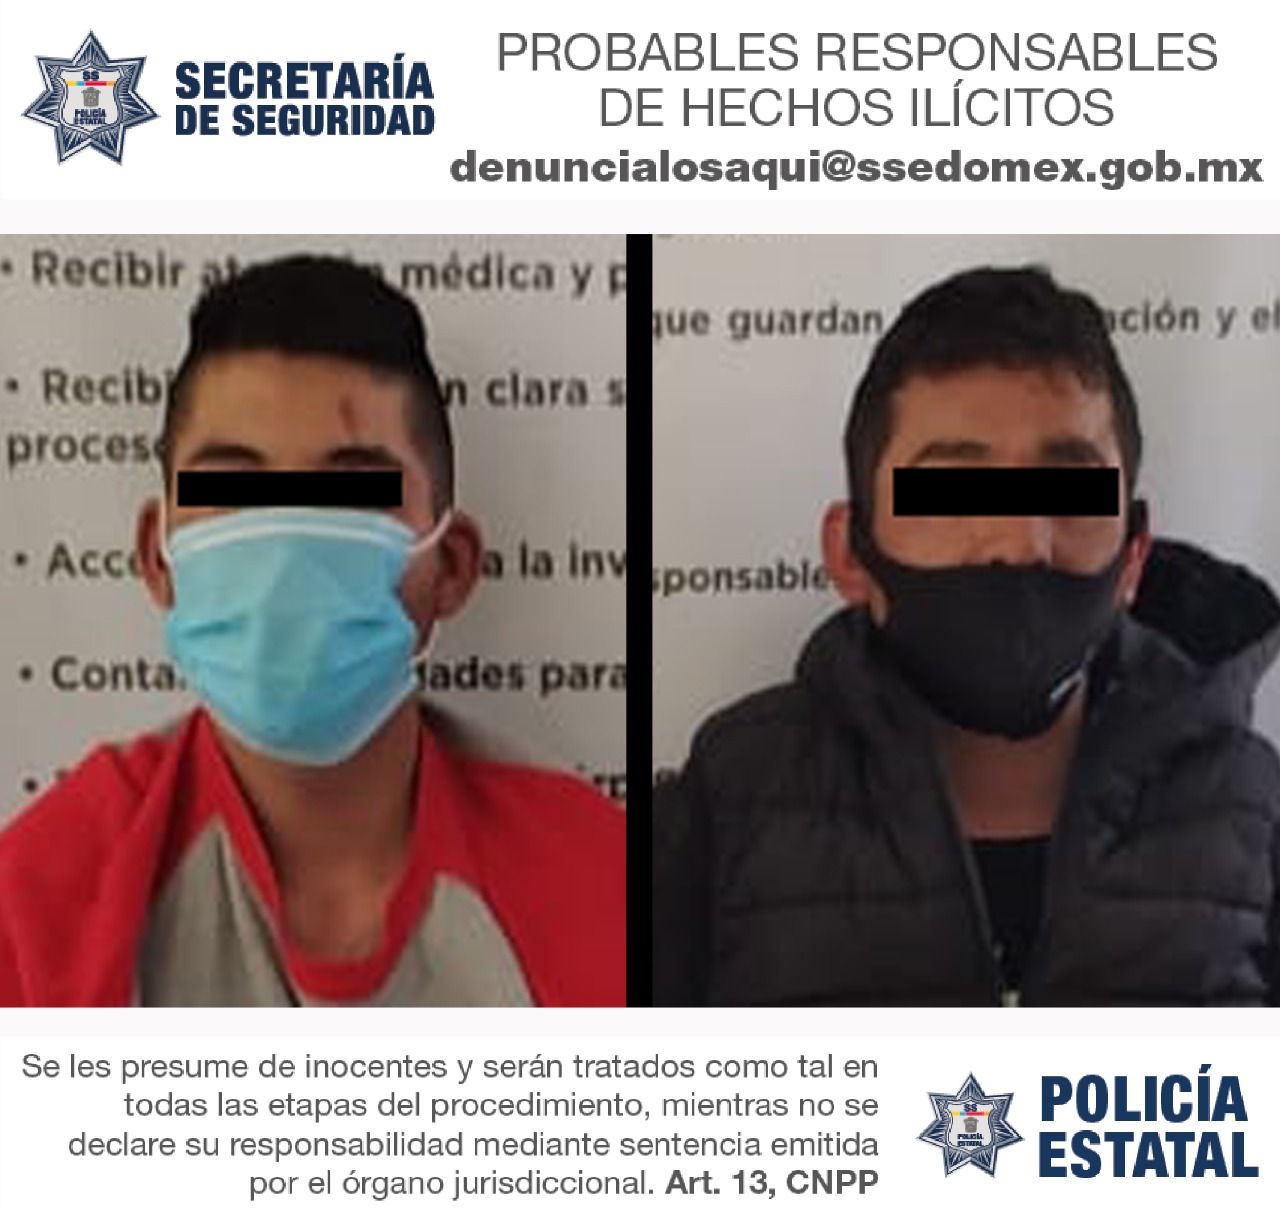 
# Capturaron a dos delincuentes que asaltaban en el Parque Sierra de Guadalupe en Tlalnepantla